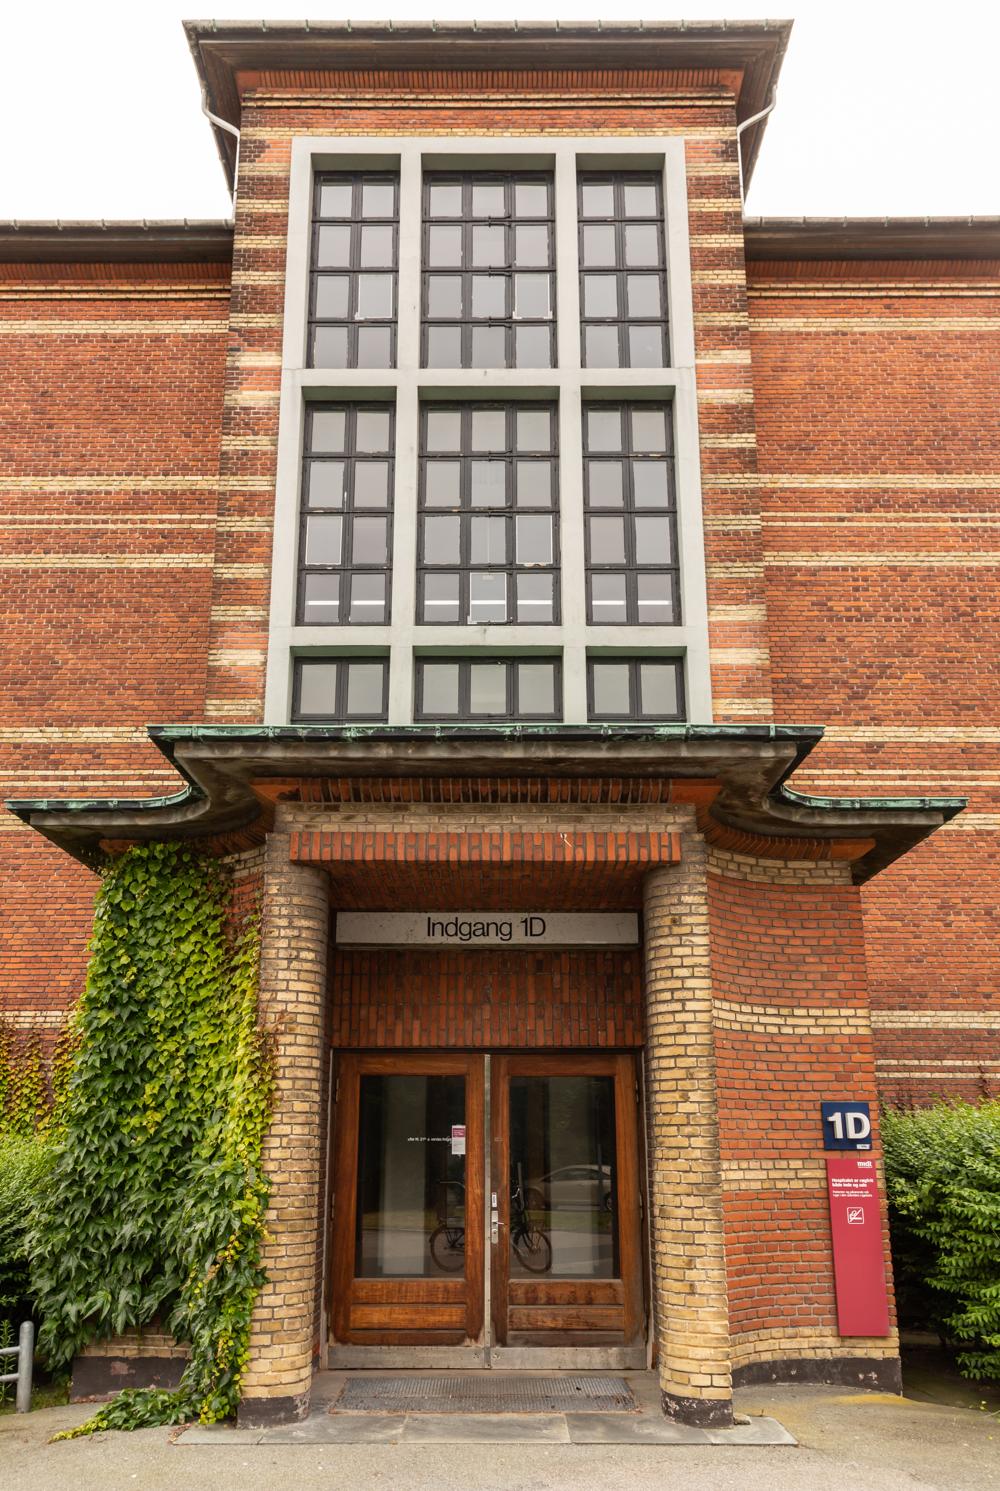 Aarhus Kommune indgik i 2014 en aftale med Region Midtjylland om at overtage det tidligere Amtssygehus' bygninger og grund ved Tage Hansens Gade i Aarhus.